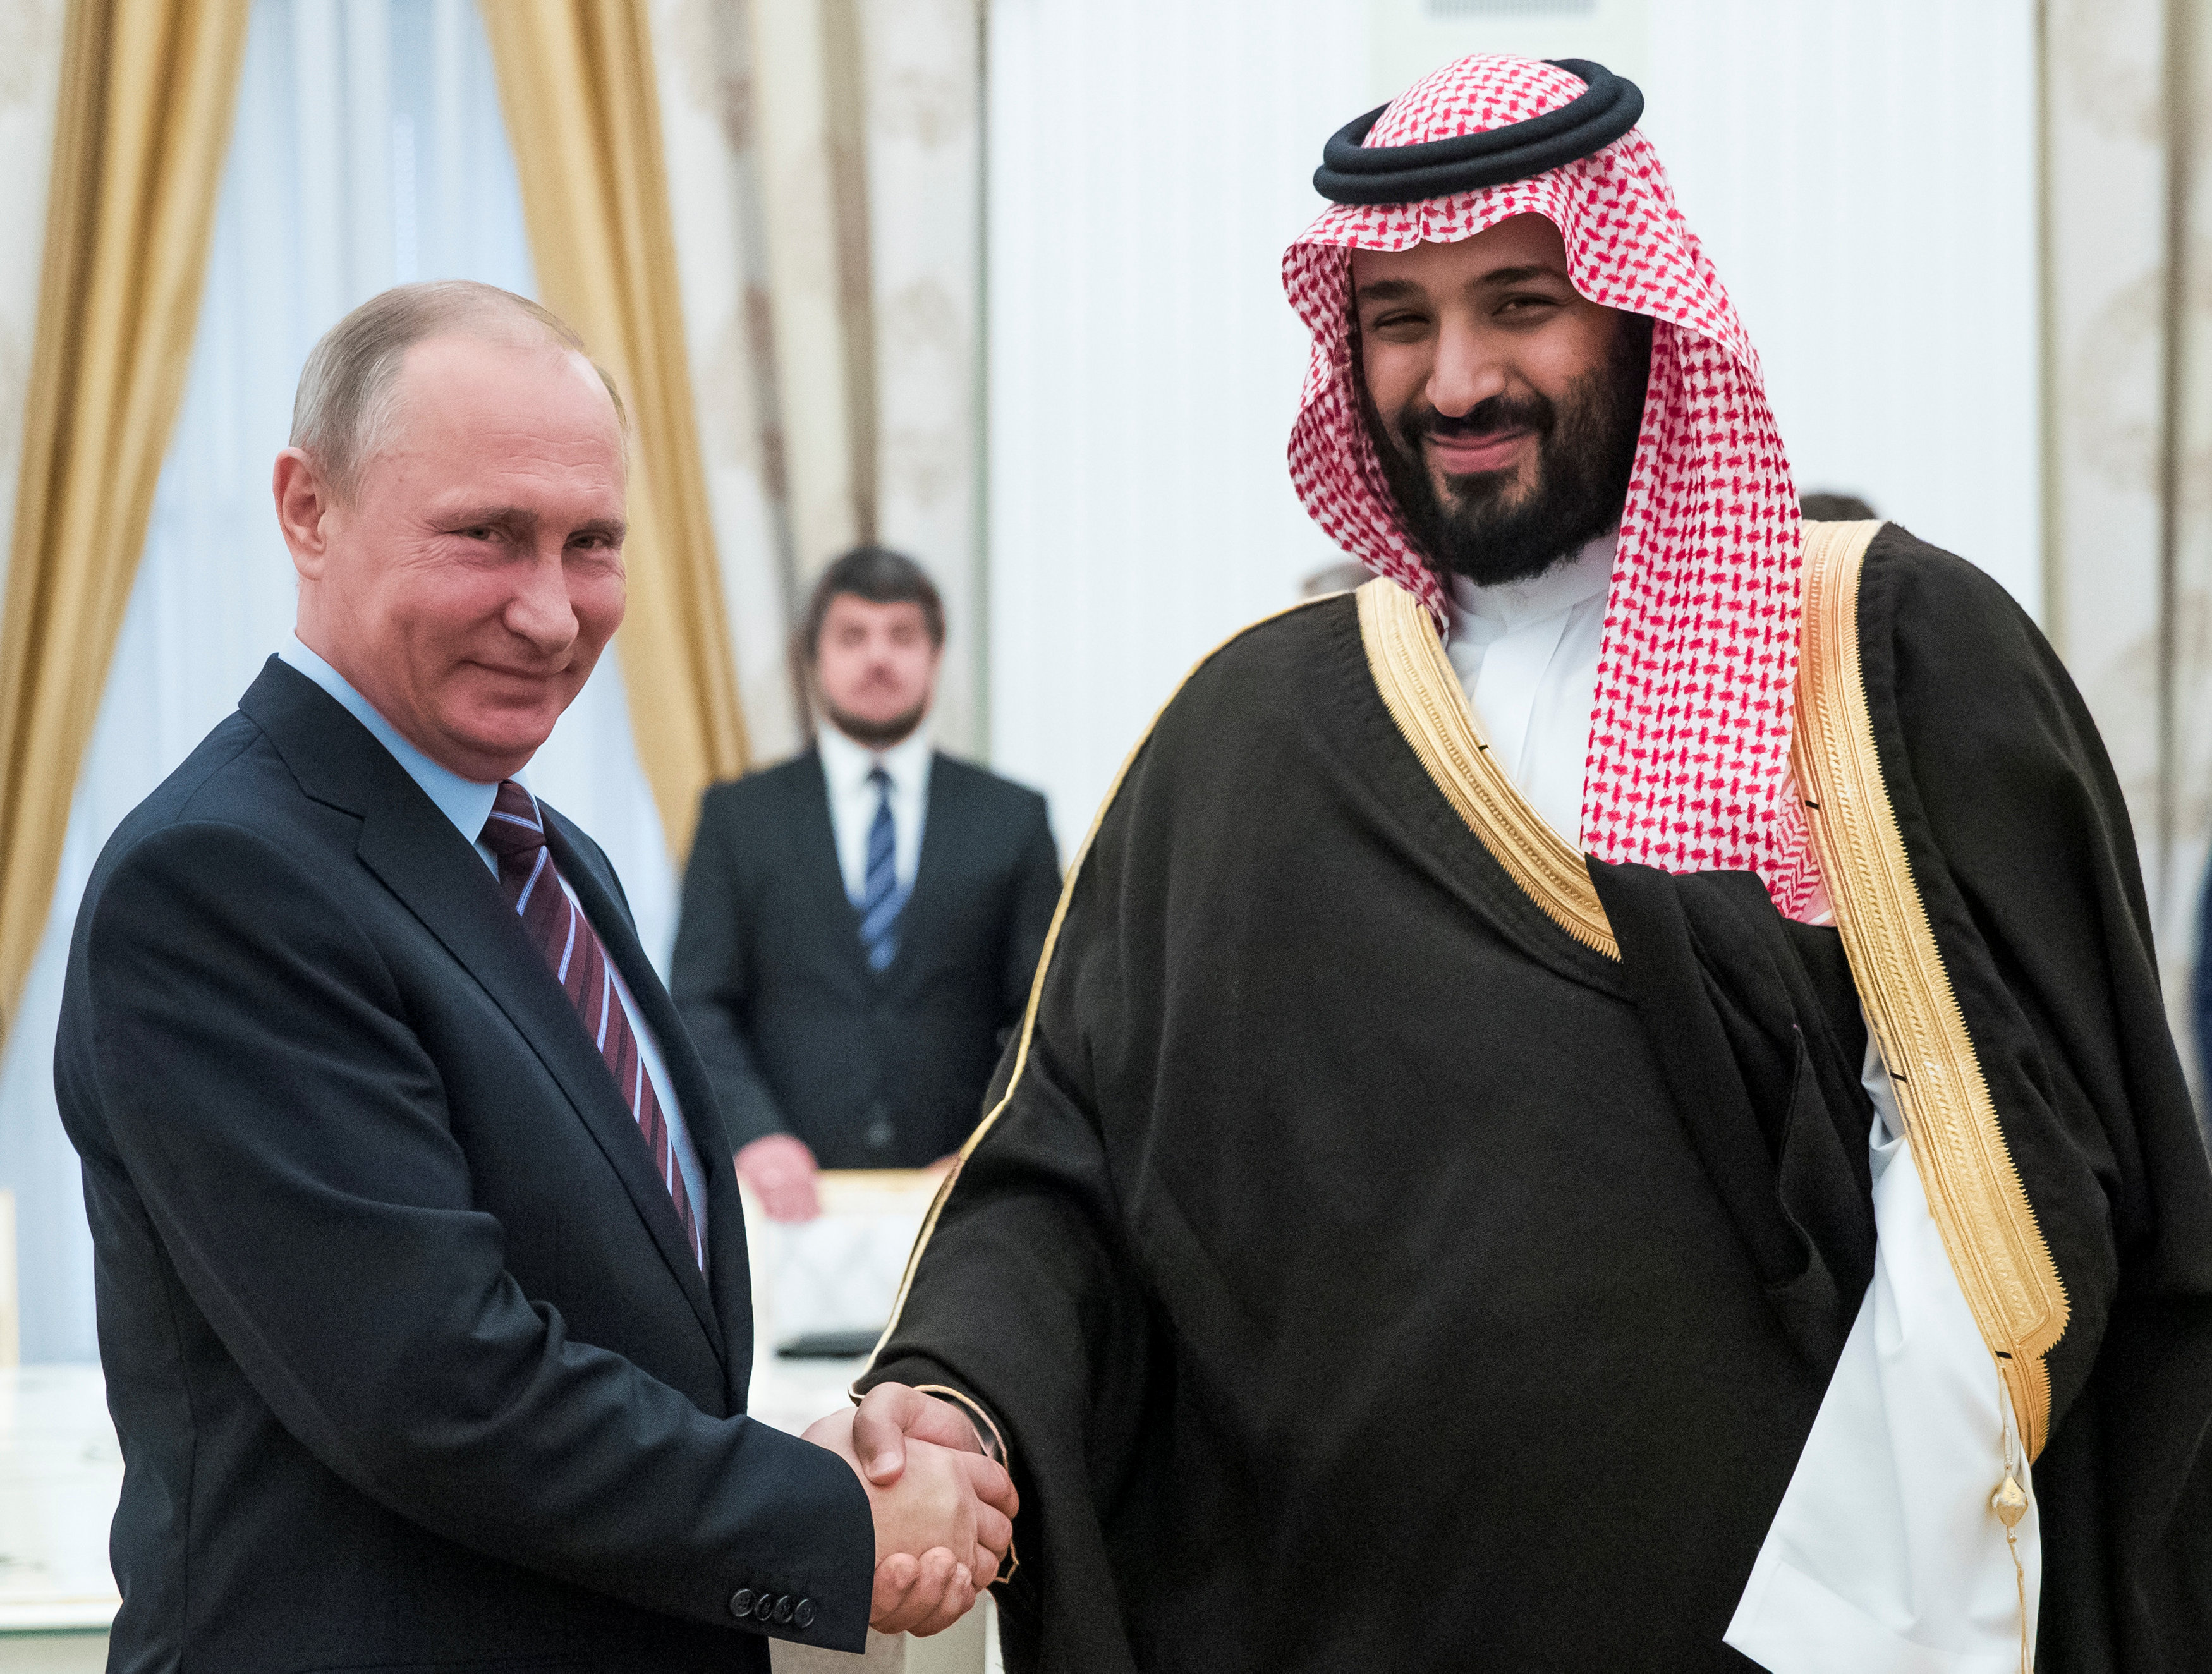 Russia's Putin, Saudi prince praise dialogue on oil, Syria